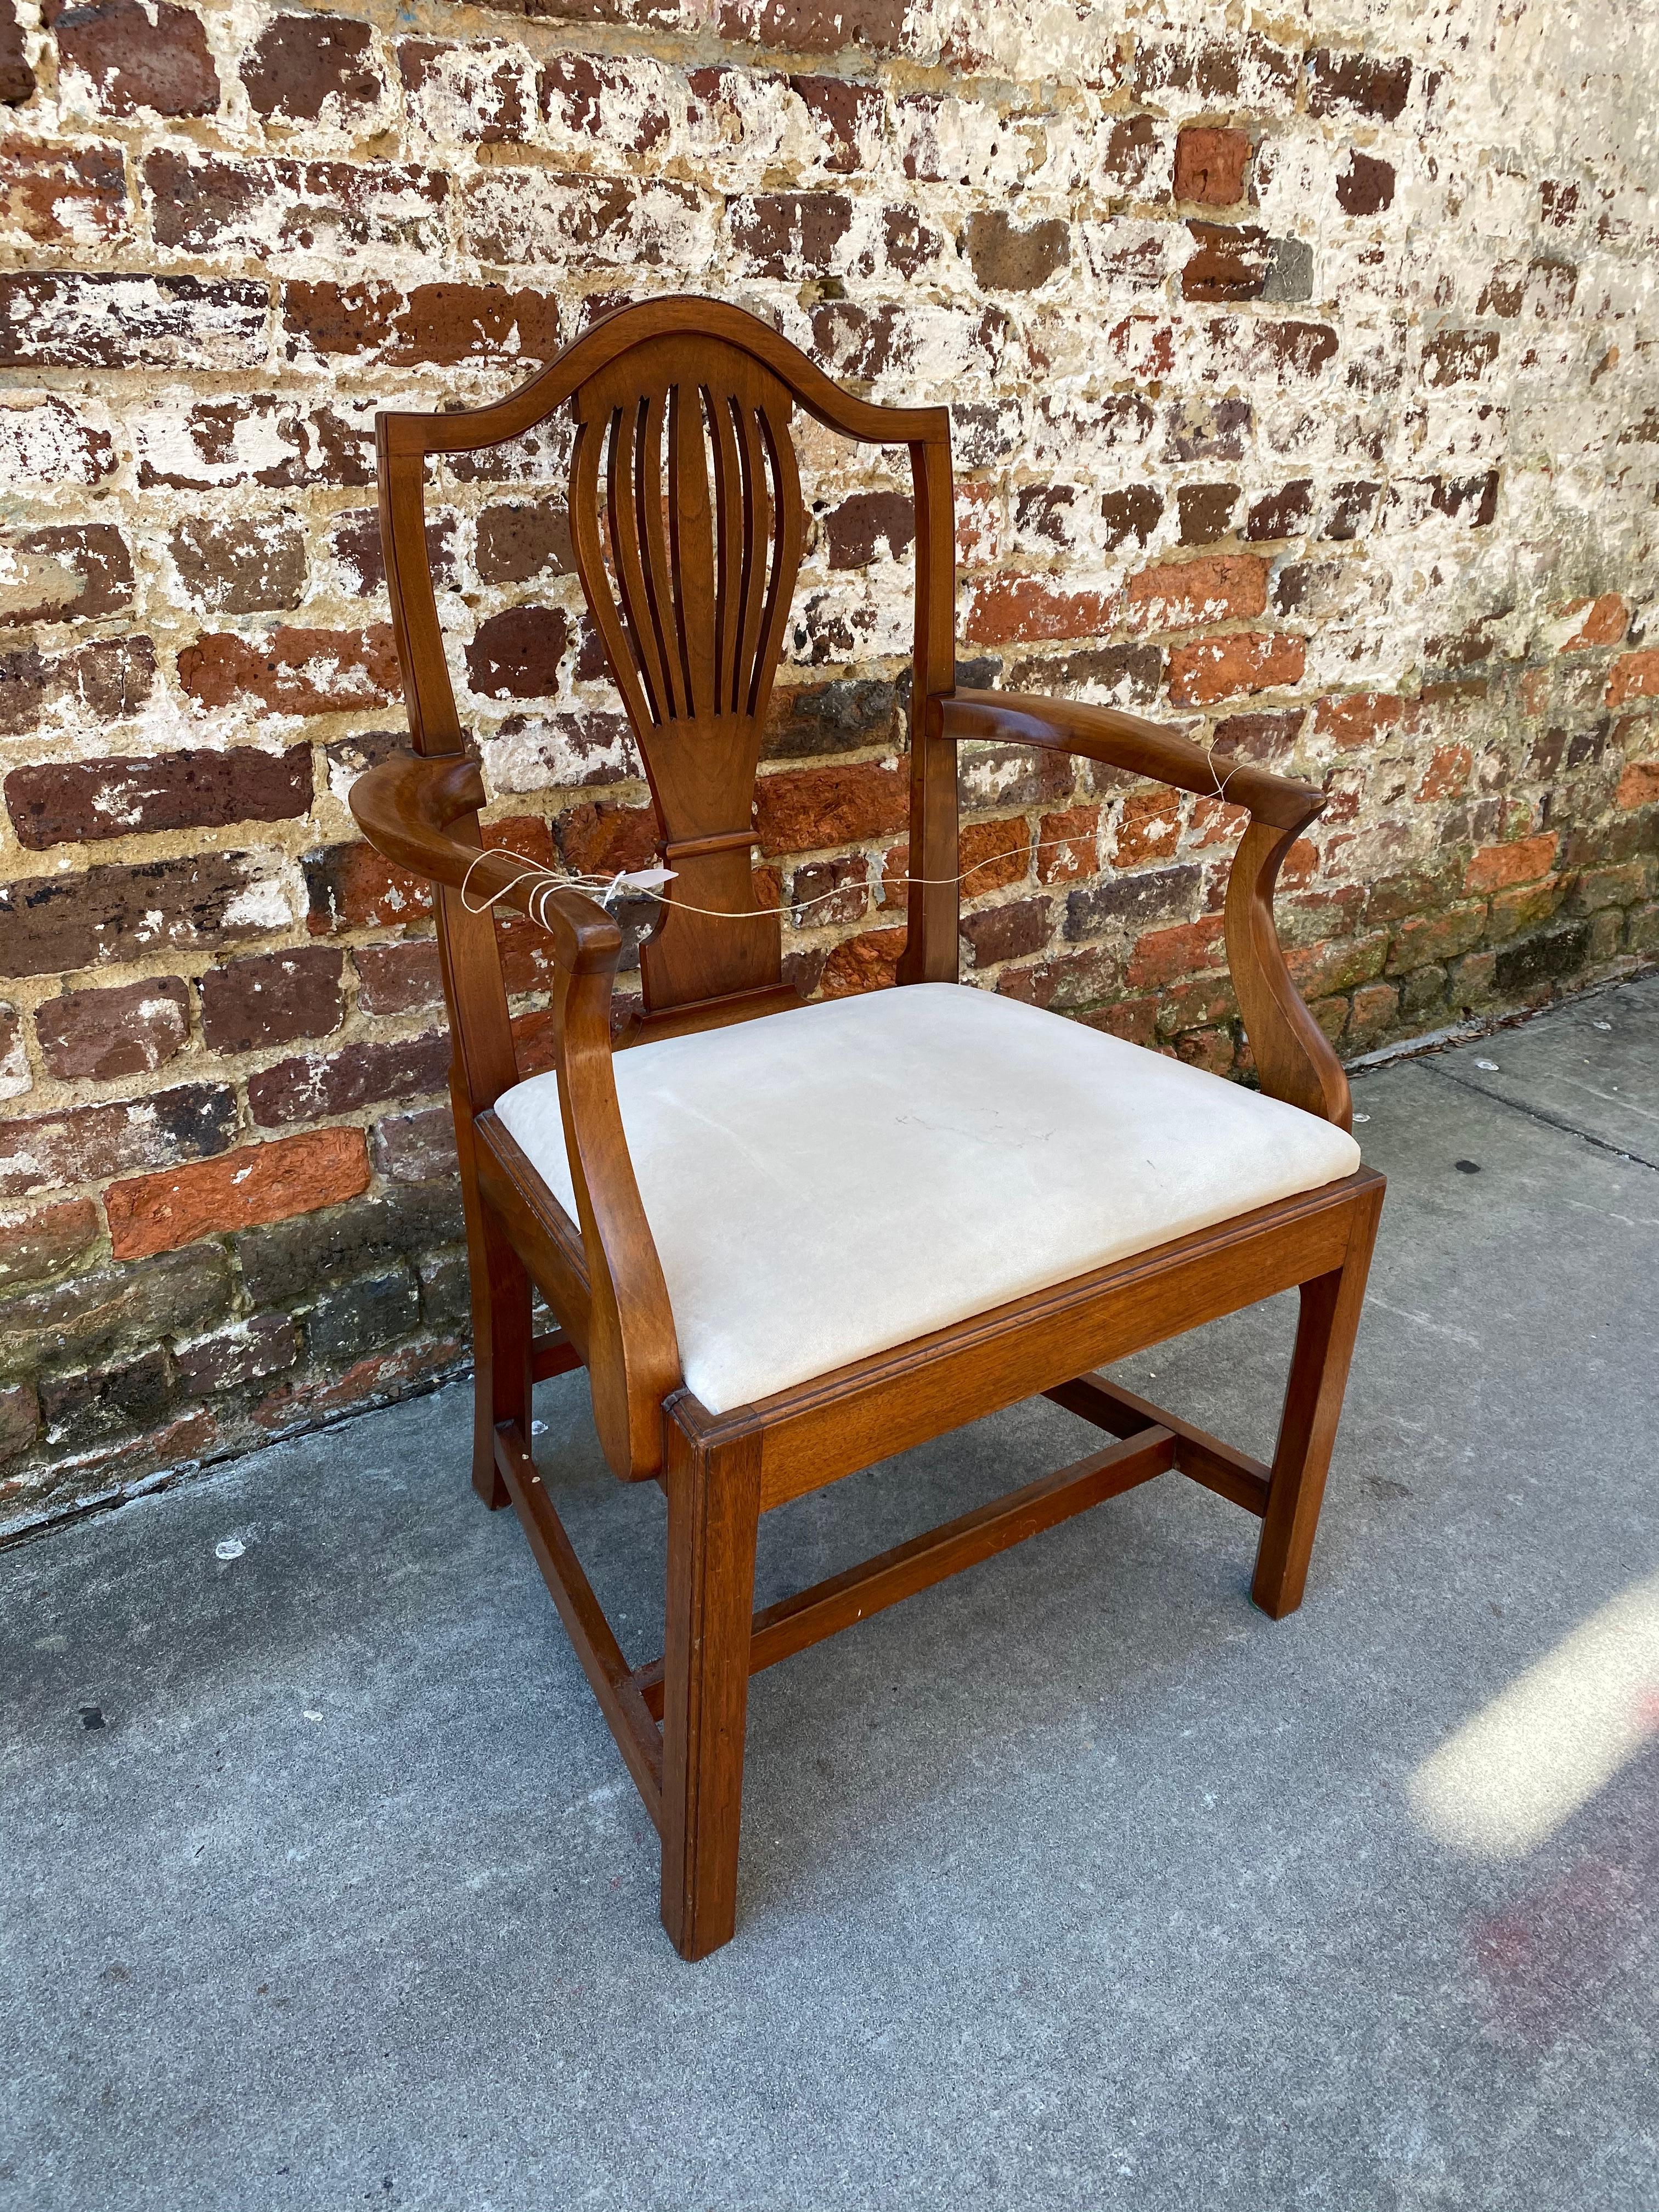 Va walnut armchair with slip seat.